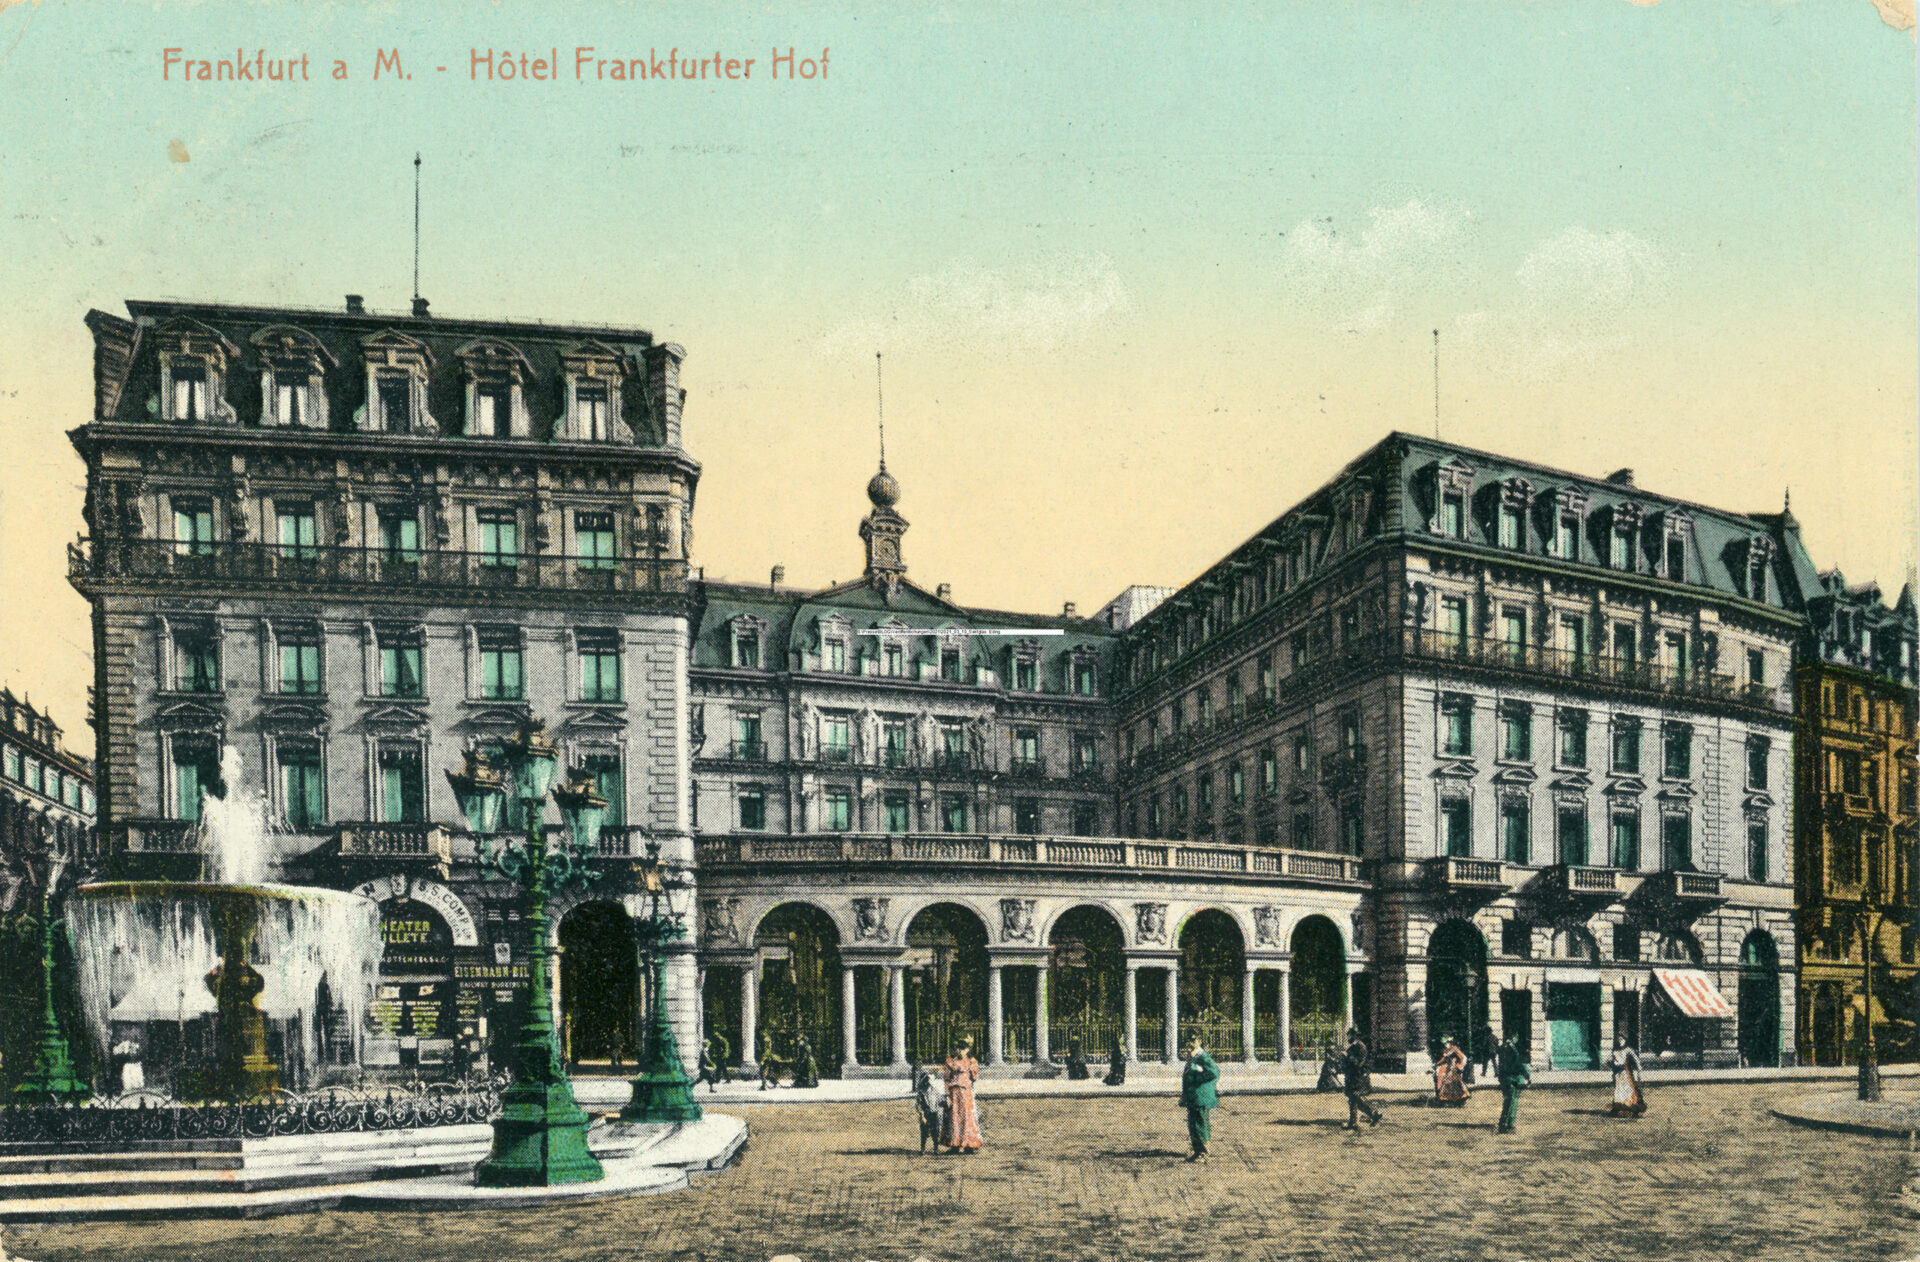 Hotel Frankfurter Hof, historische Postkarte, undatiert, Städel Archiv, Frankfurt am Main